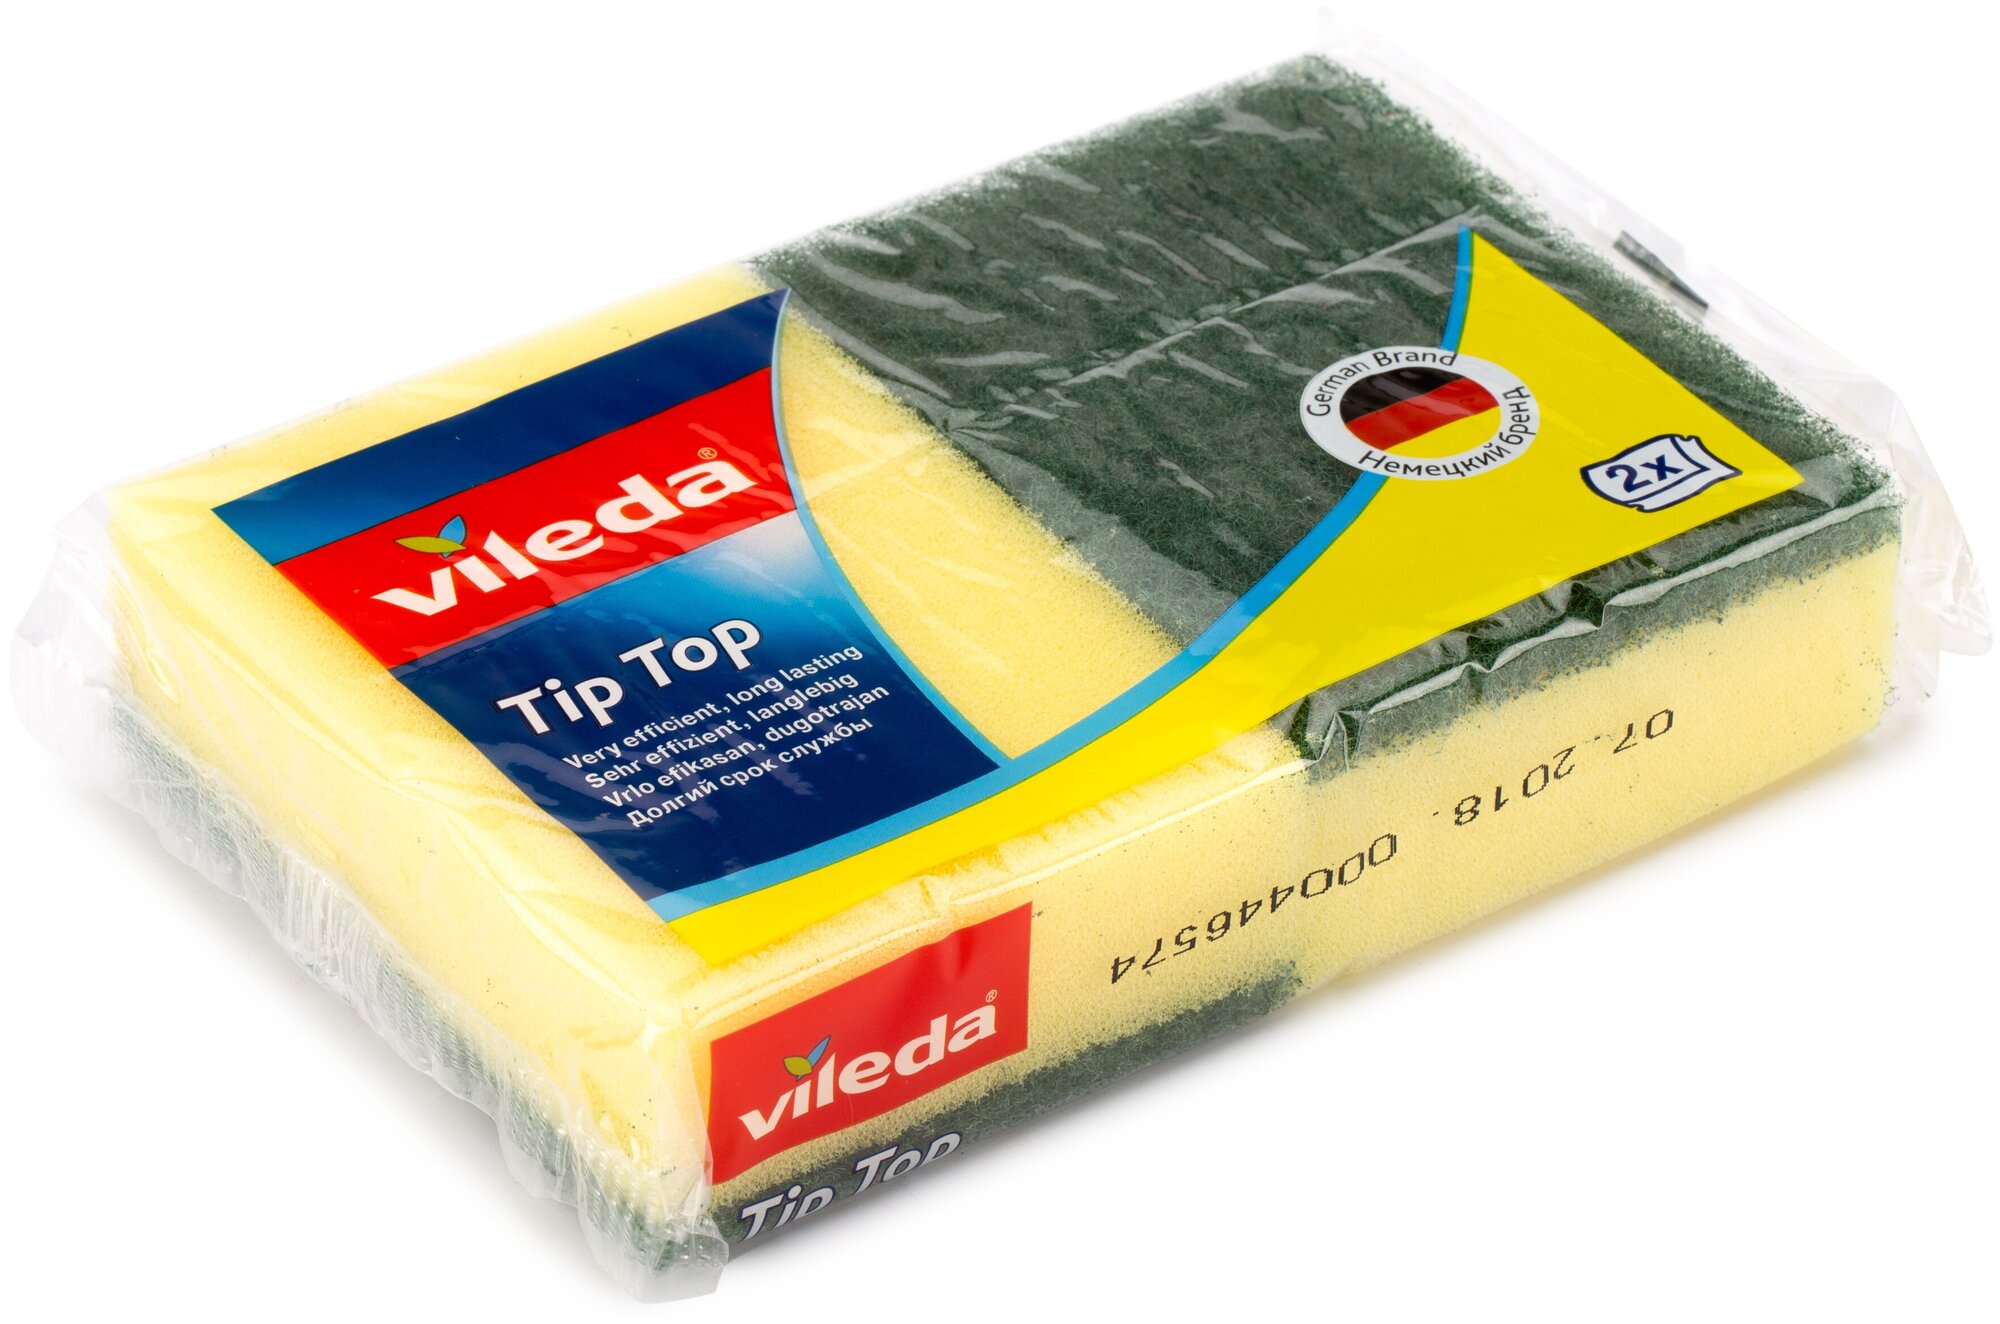 Губка для посуды Vileda Tip-Top